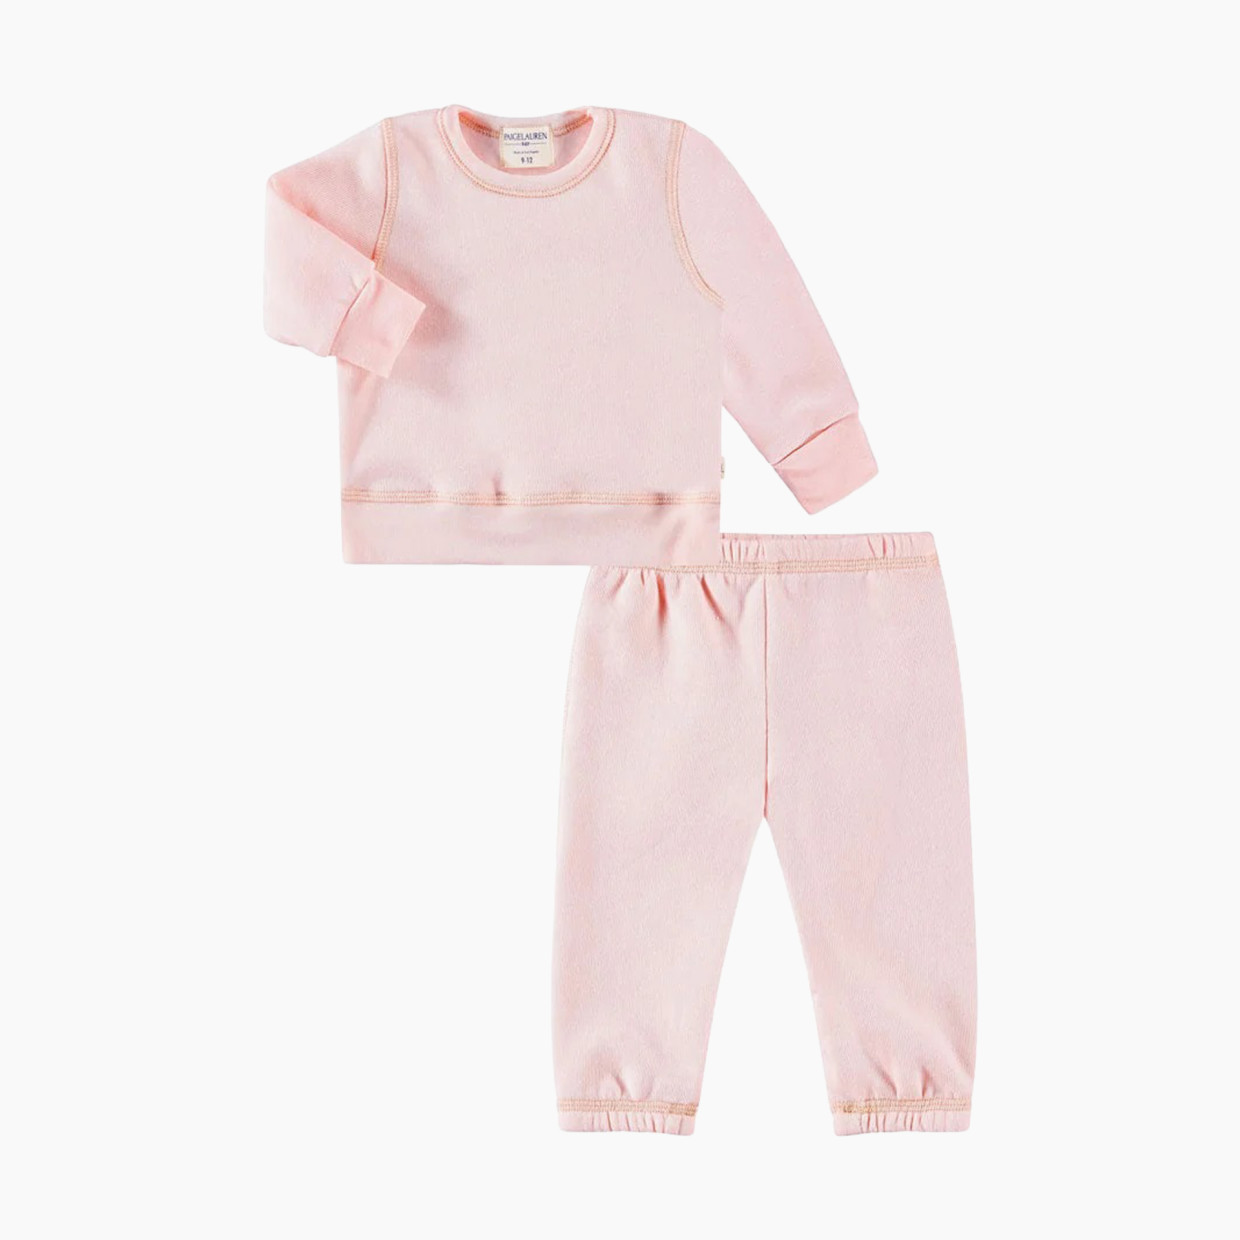 Paige Lauren Baby Blanket Blend Fleece Loungewear Sets-Splendid - Pink, 18-24m.